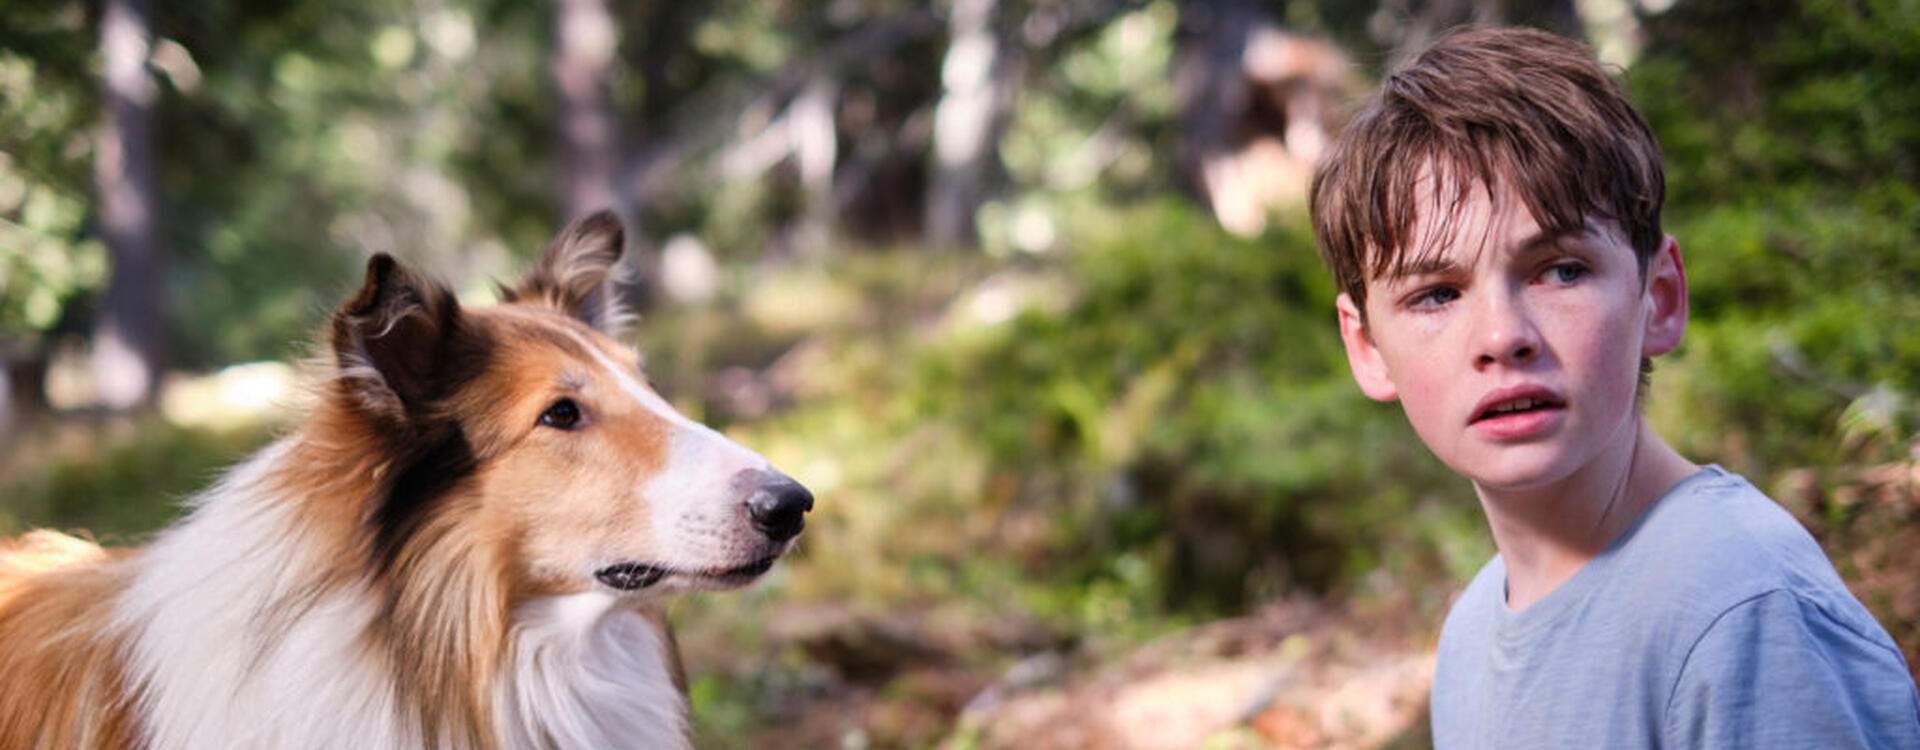 Lassie - ein neues Abenteuer